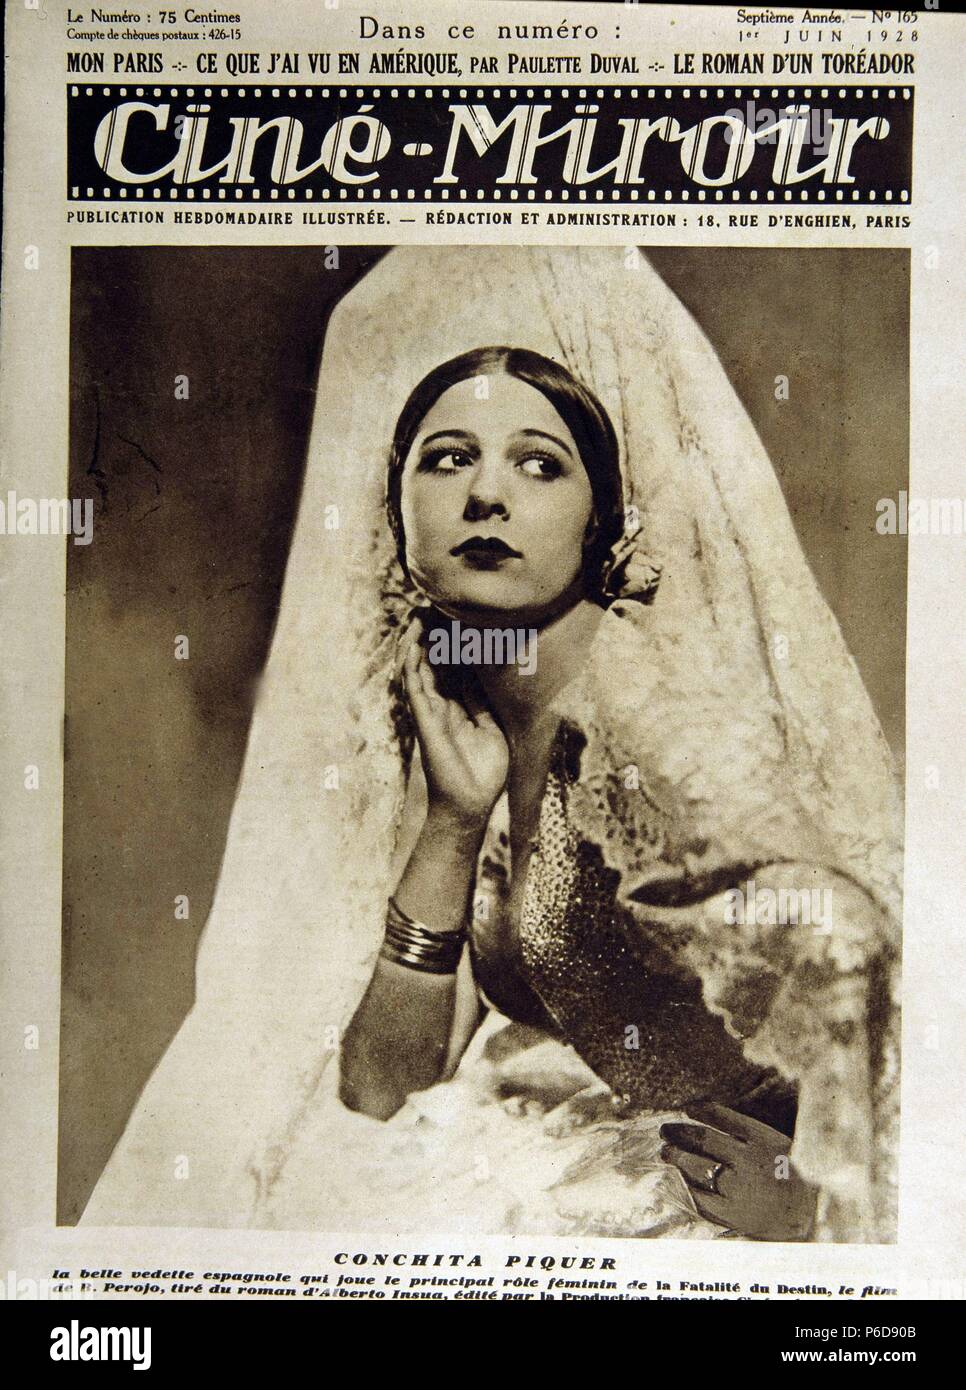 PIQUER, CONCHA. ACTRIZ Y CANTANTE ESPAÑOLA. VALENCIA 1908-1991. PORTADA DE LA REVISTA CINE-MIROIR. PARIS 1928. Stock Photo